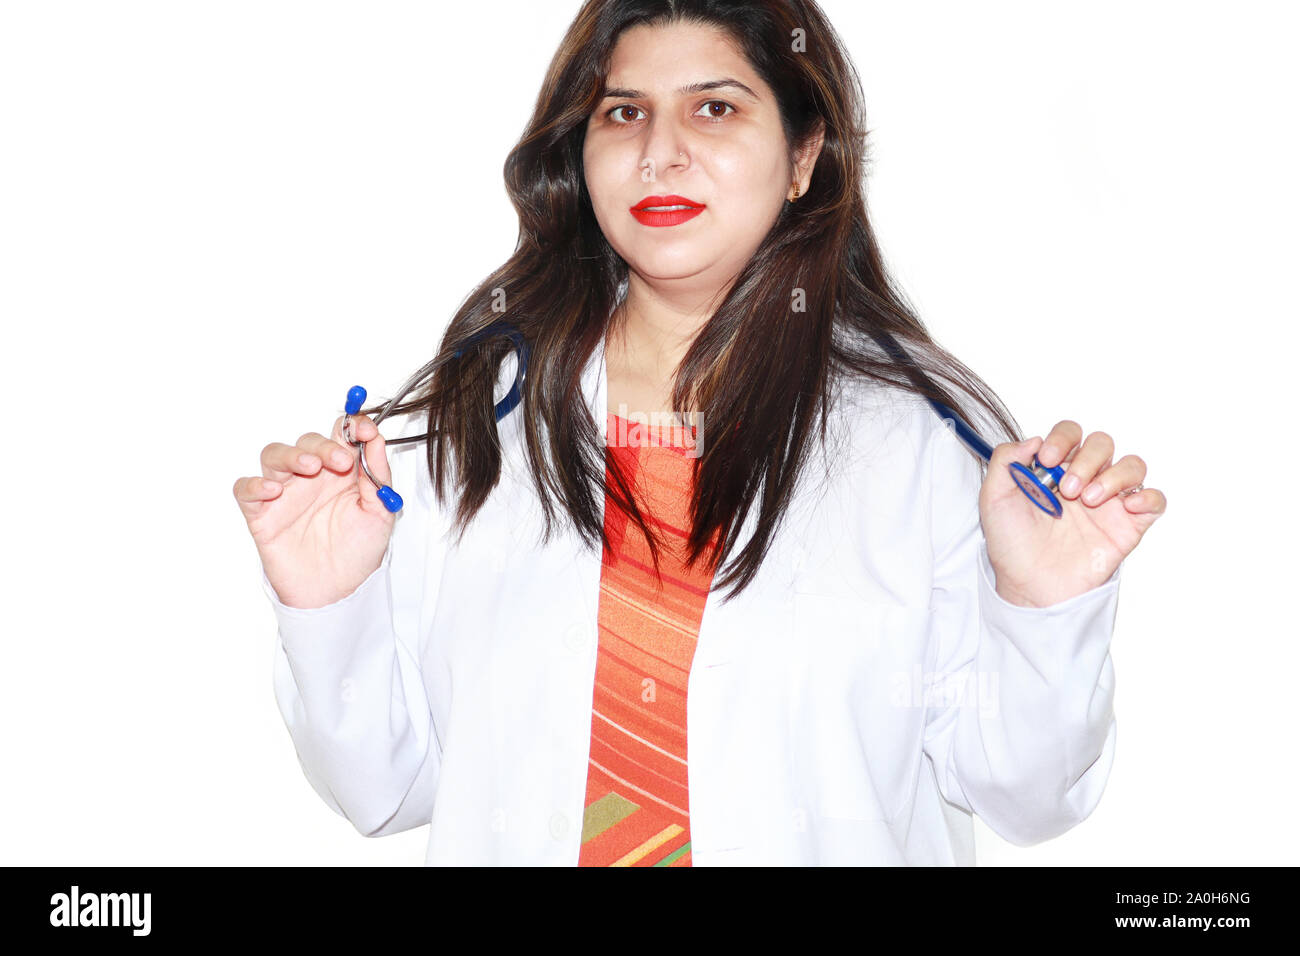 Retrato de seguro médico profesional sanitario femenino indio Foto de stock